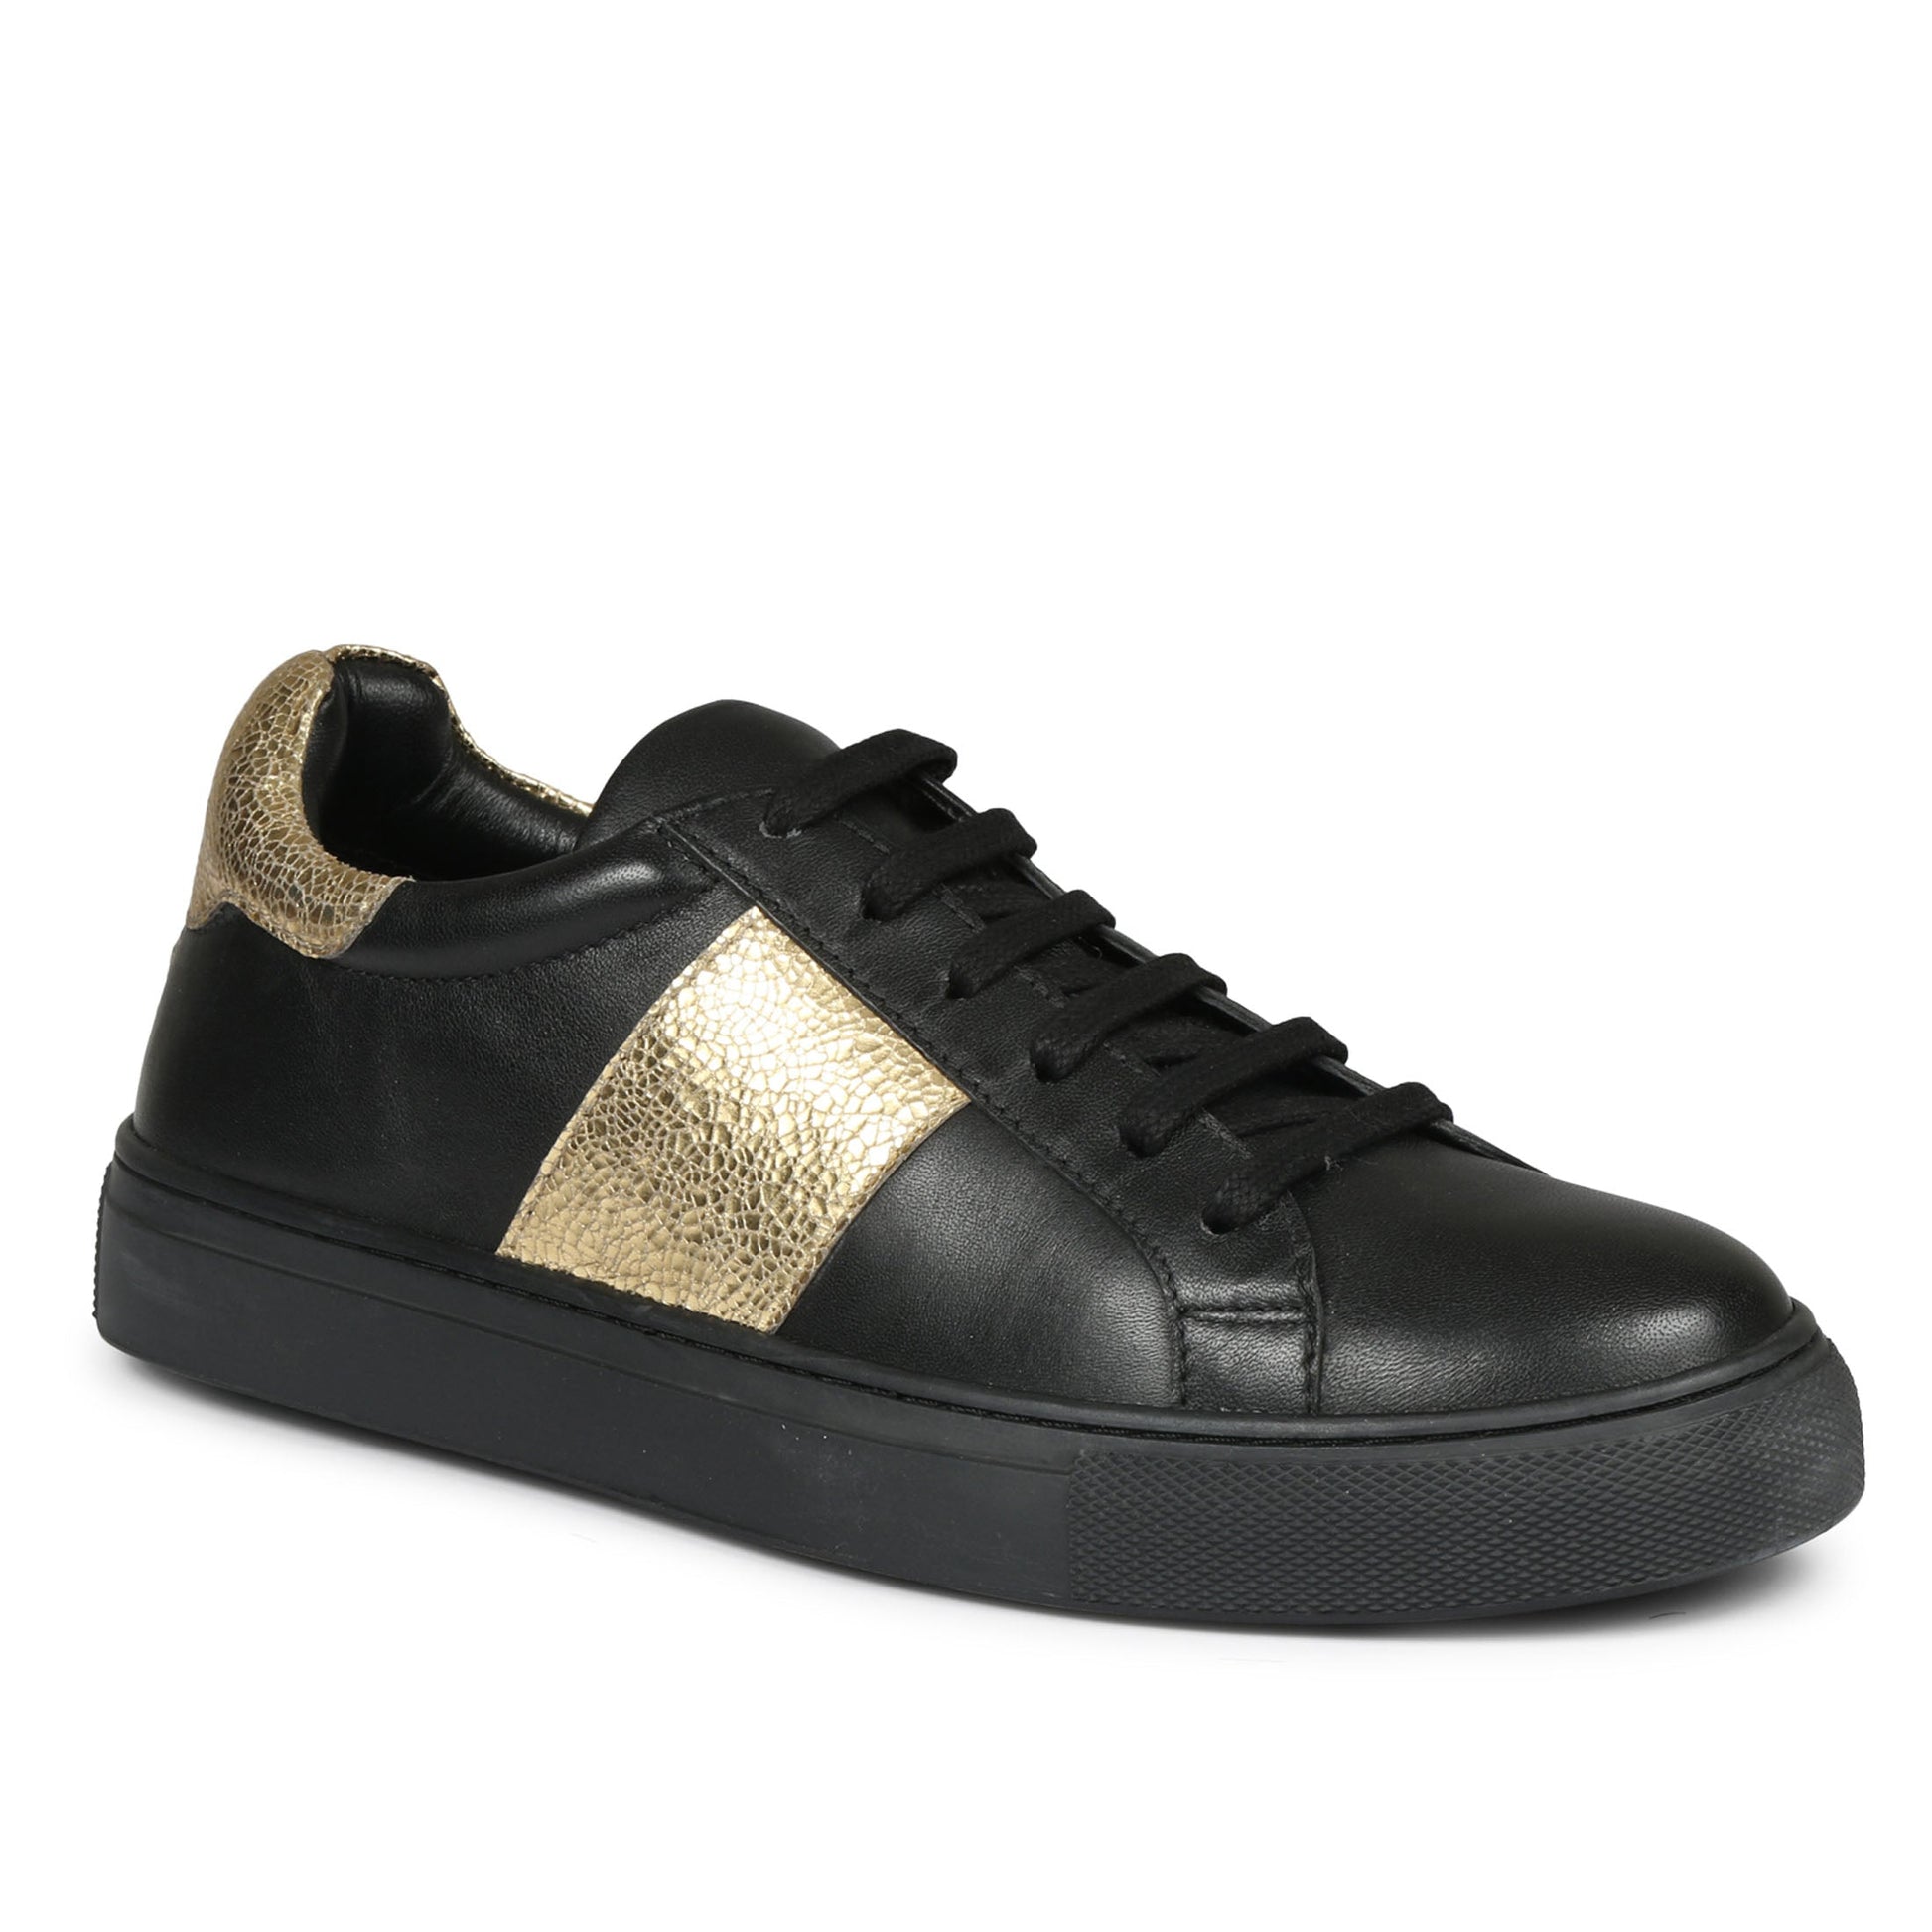 Whitesta Elen Black and Gold Leather Sneakers - Whitesta